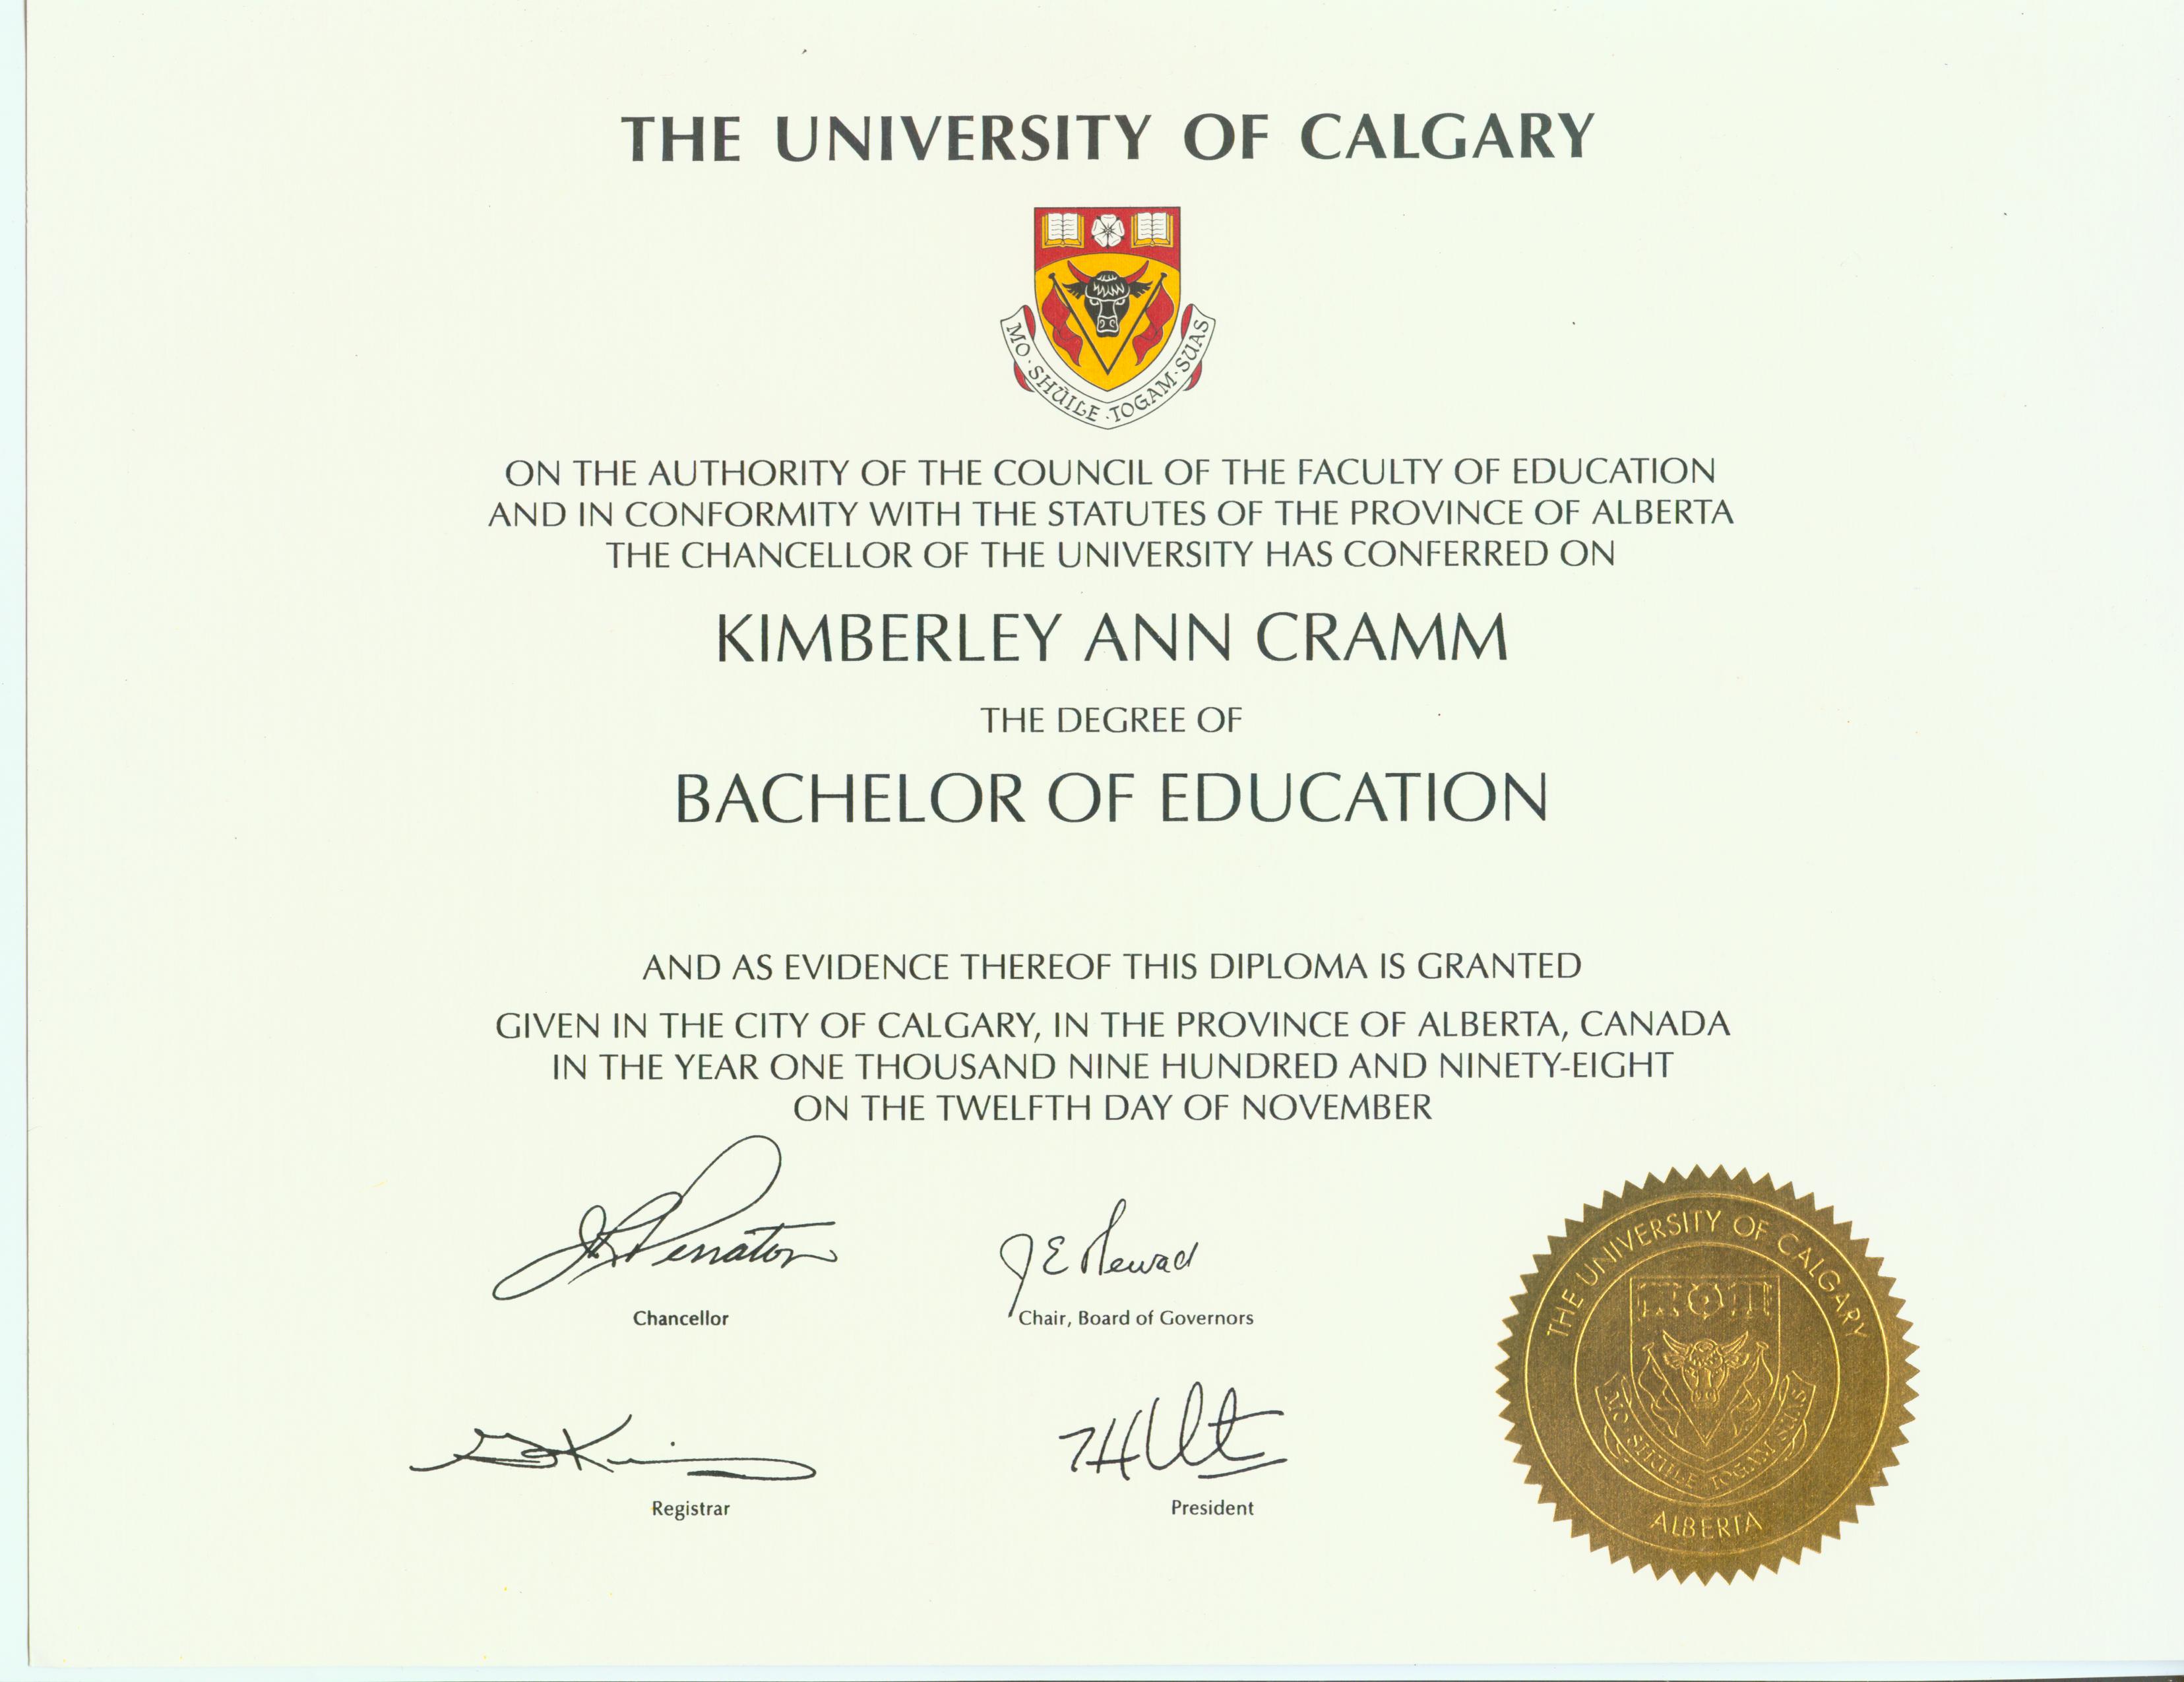 Kimberley's B.Ed Diploma from the University of Calgary